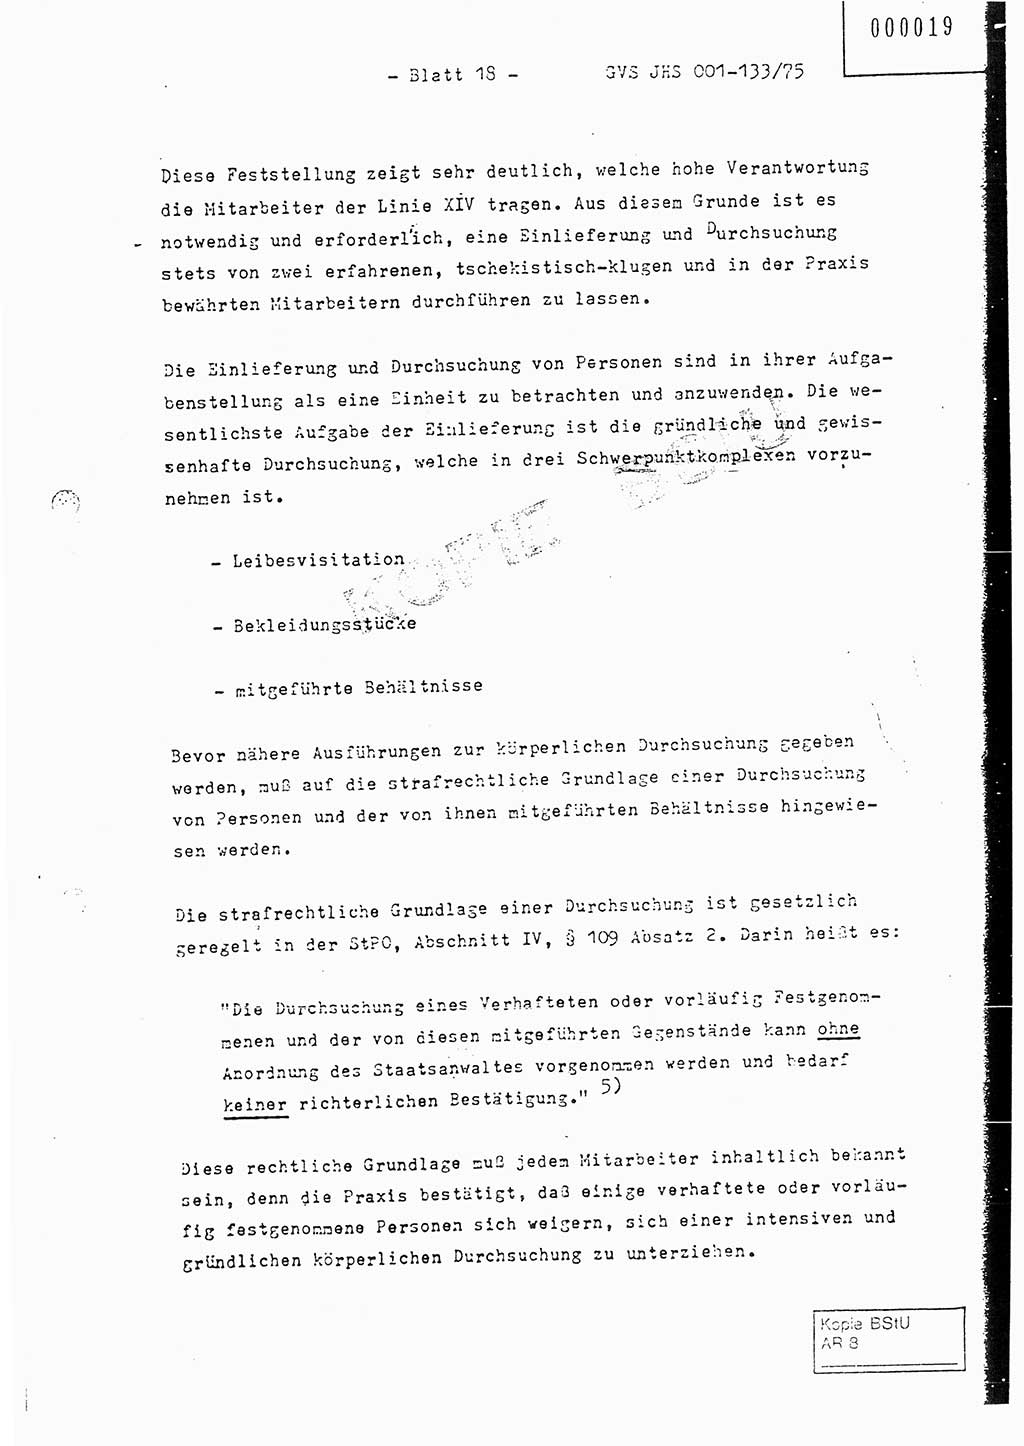 Fachschulabschlußarbeit Major Werner Braun (Abt. ⅩⅣ), Hauptmann Klaus Zeiß (Abt. ⅩⅣ), Ministerium für Staatssicherheit (MfS) [Deutsche Demokratische Republik (DDR)], Juristische Hochschule (JHS), Geheime Verschlußsache (GVS) 001-133/75, Potsdam 1976, Blatt 18 (FS-Abschl.-Arb. MfS DDR JHS GVS 001-133/75 1976, Bl. 18)